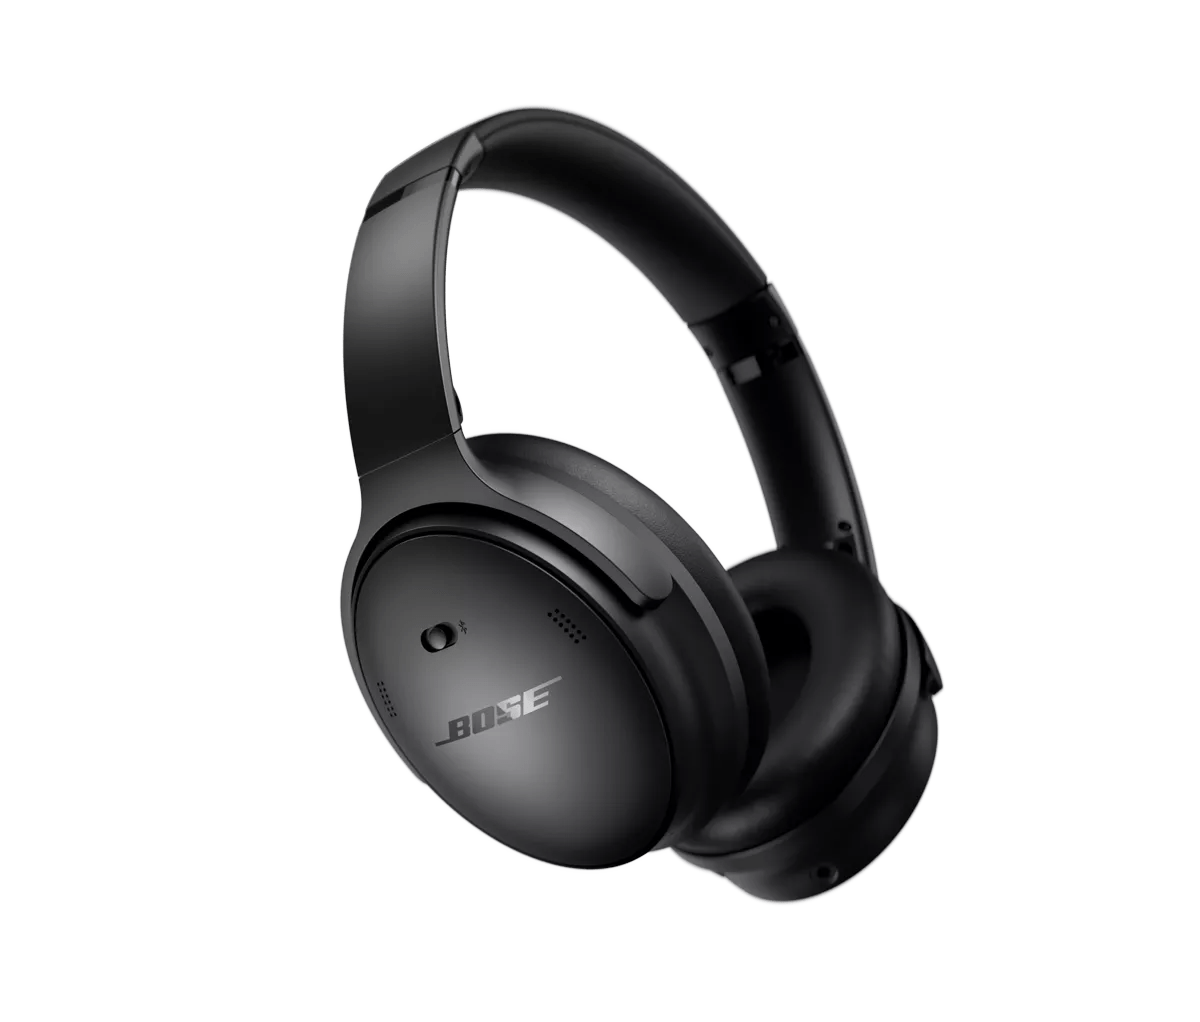 Навушники Bose QuietComfort headphones, black (884367-0100)